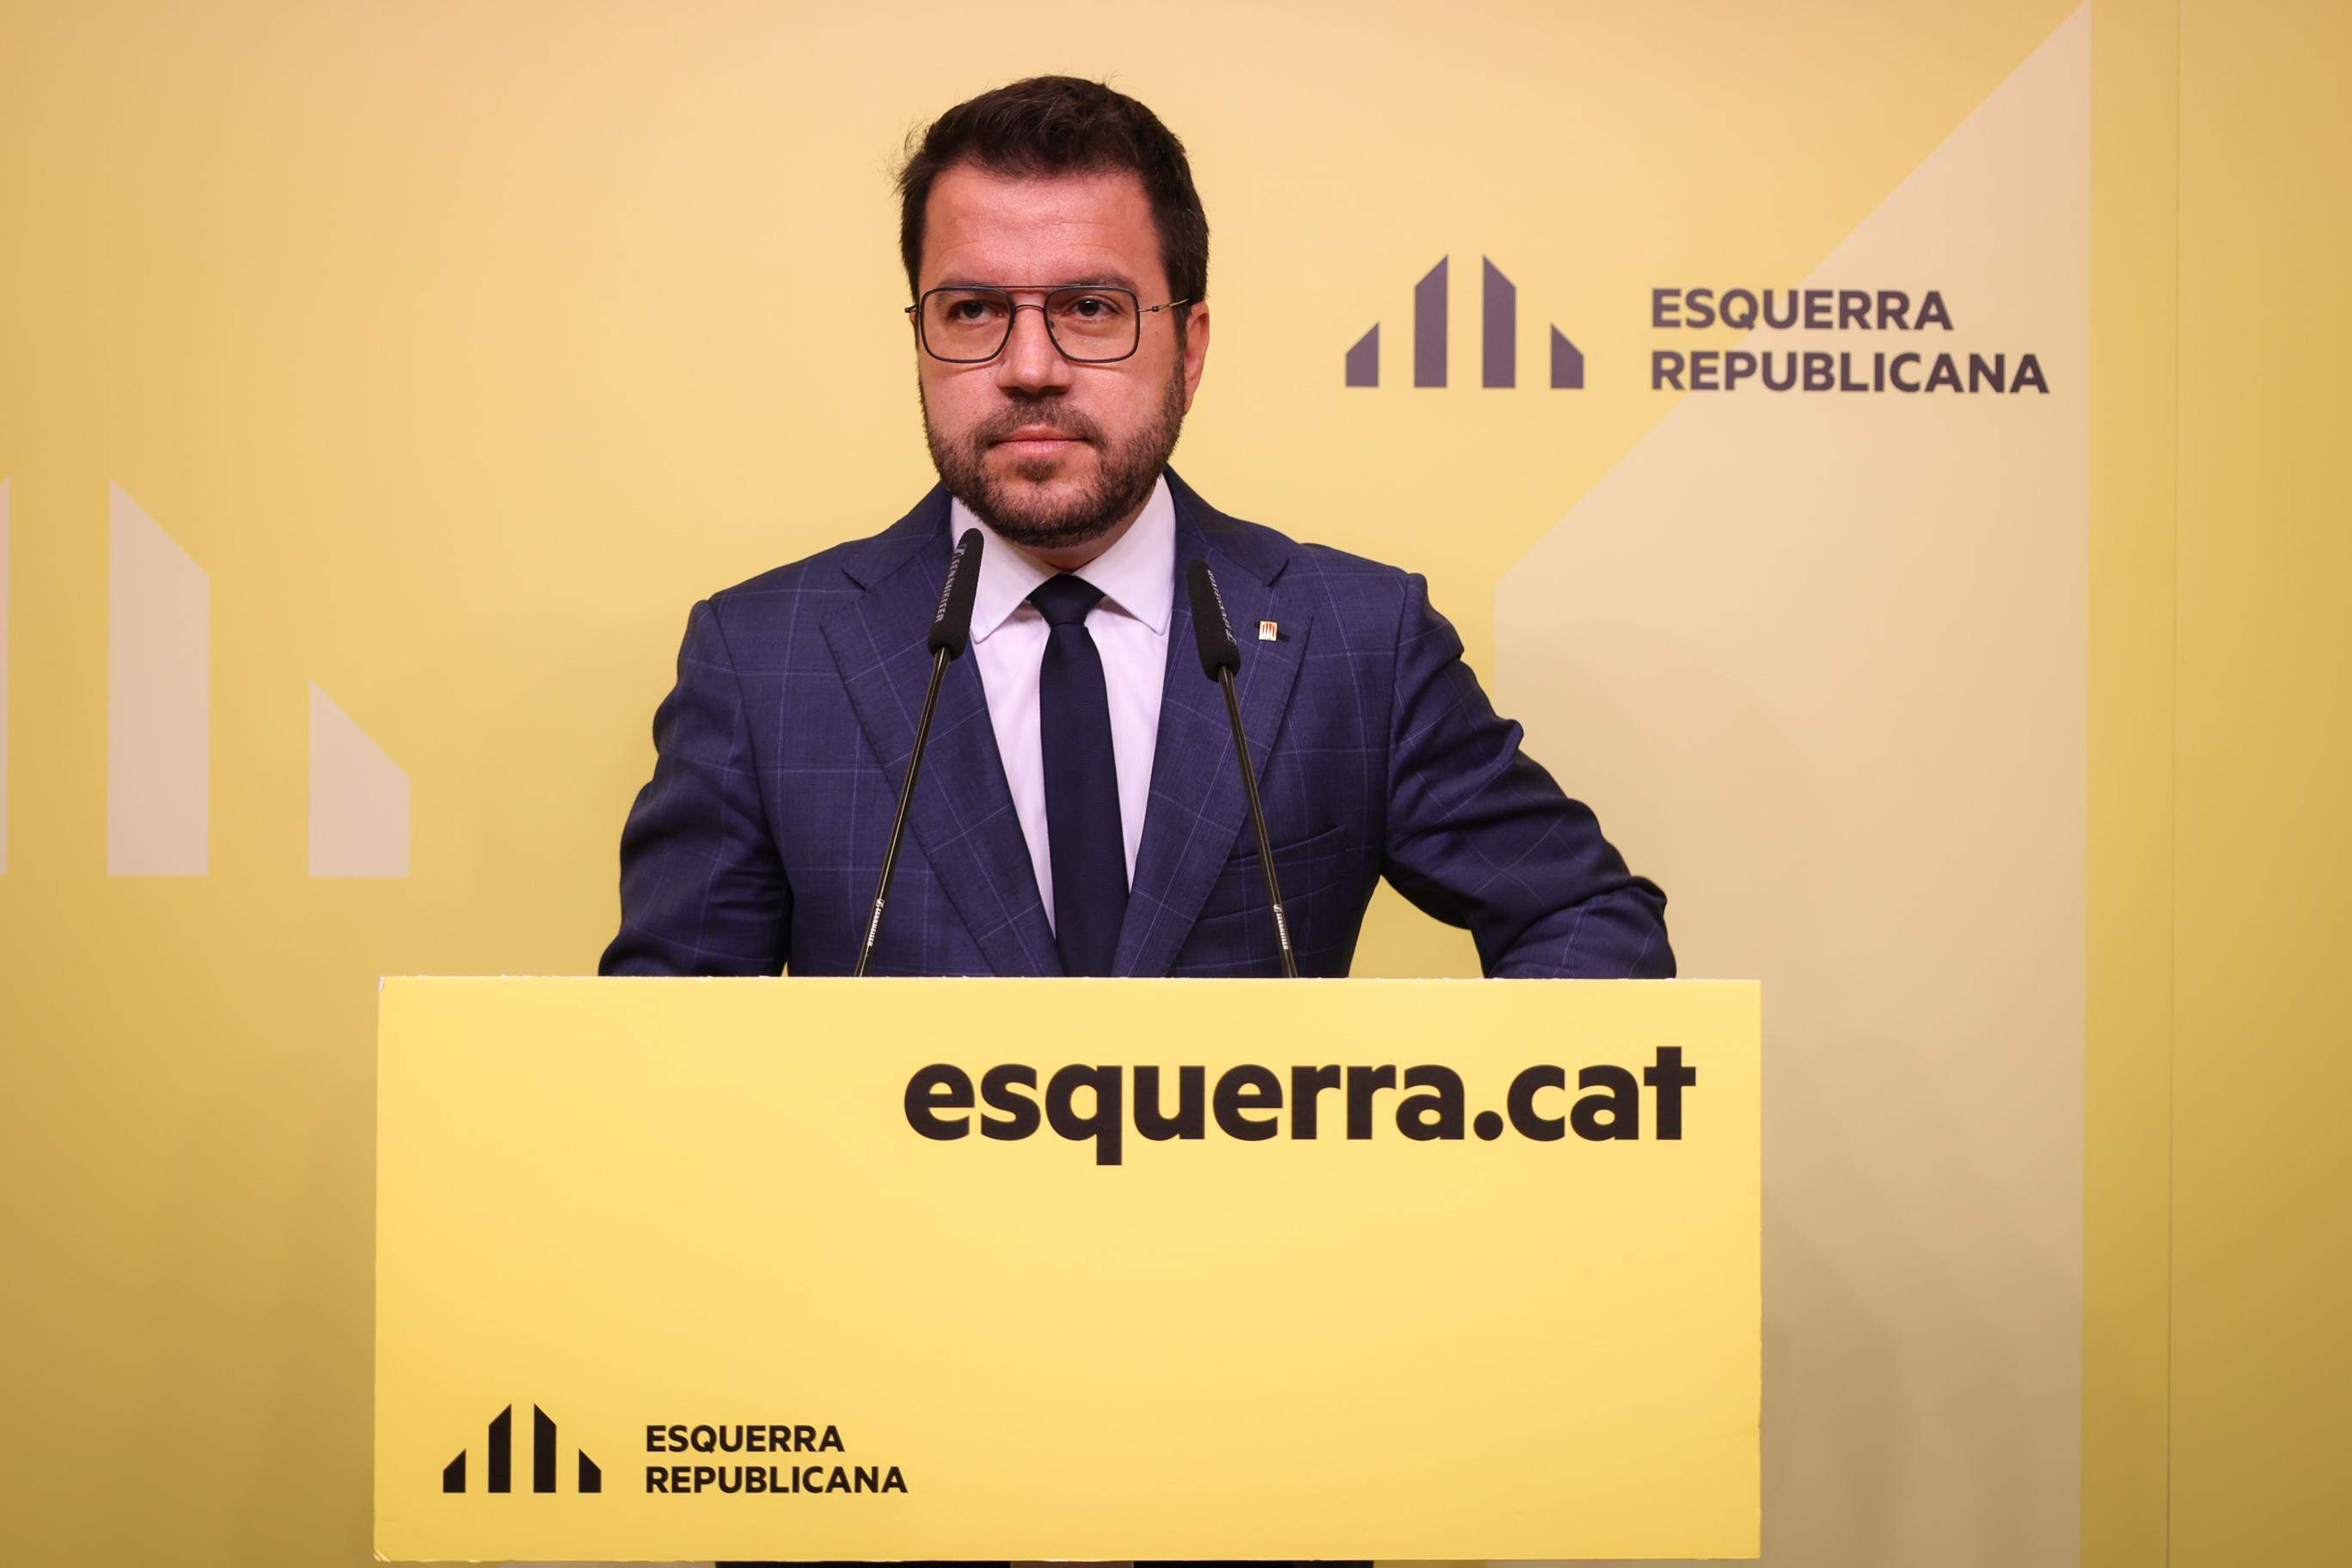 Pere Aragonès formalitza la seva renúncia a l'acta de diputat